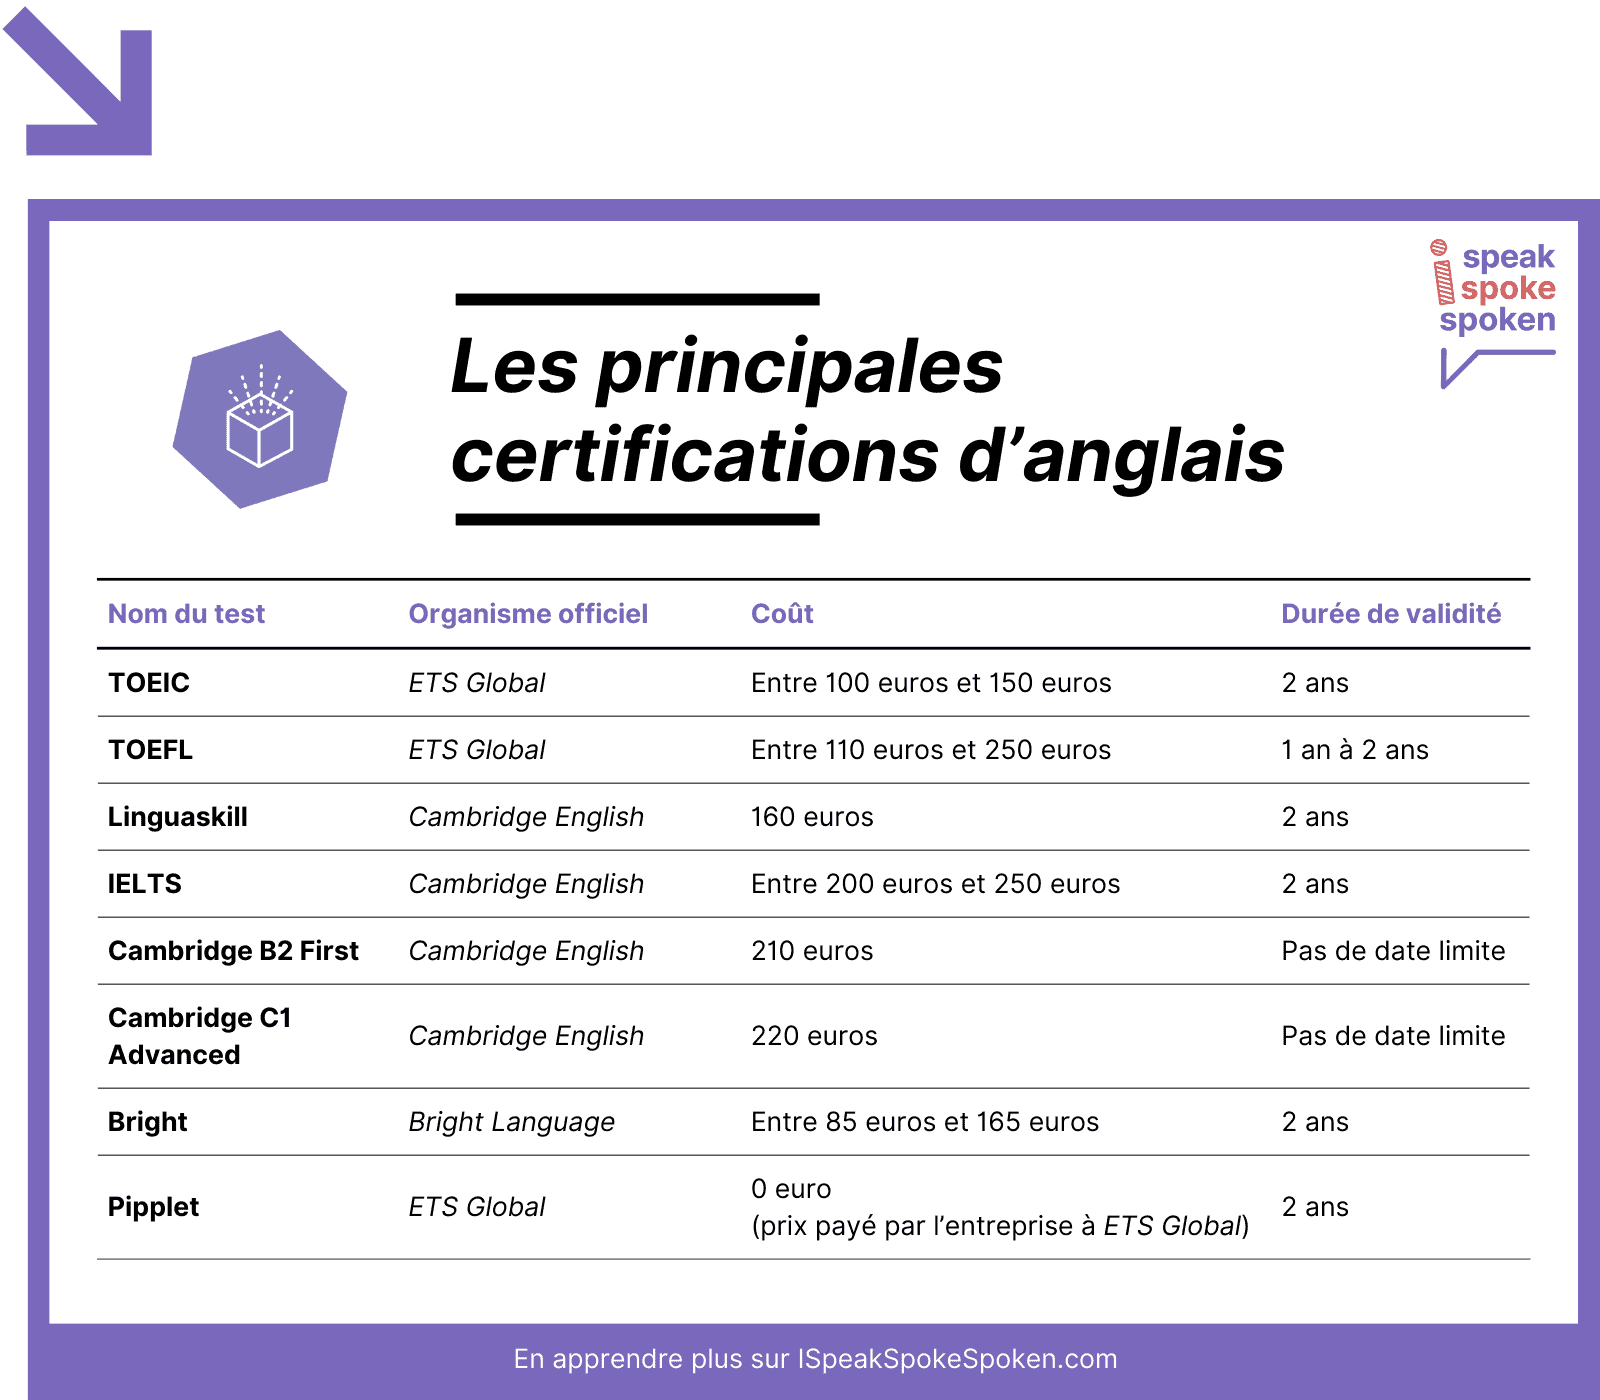 Les 8 principales certifications d’anglais